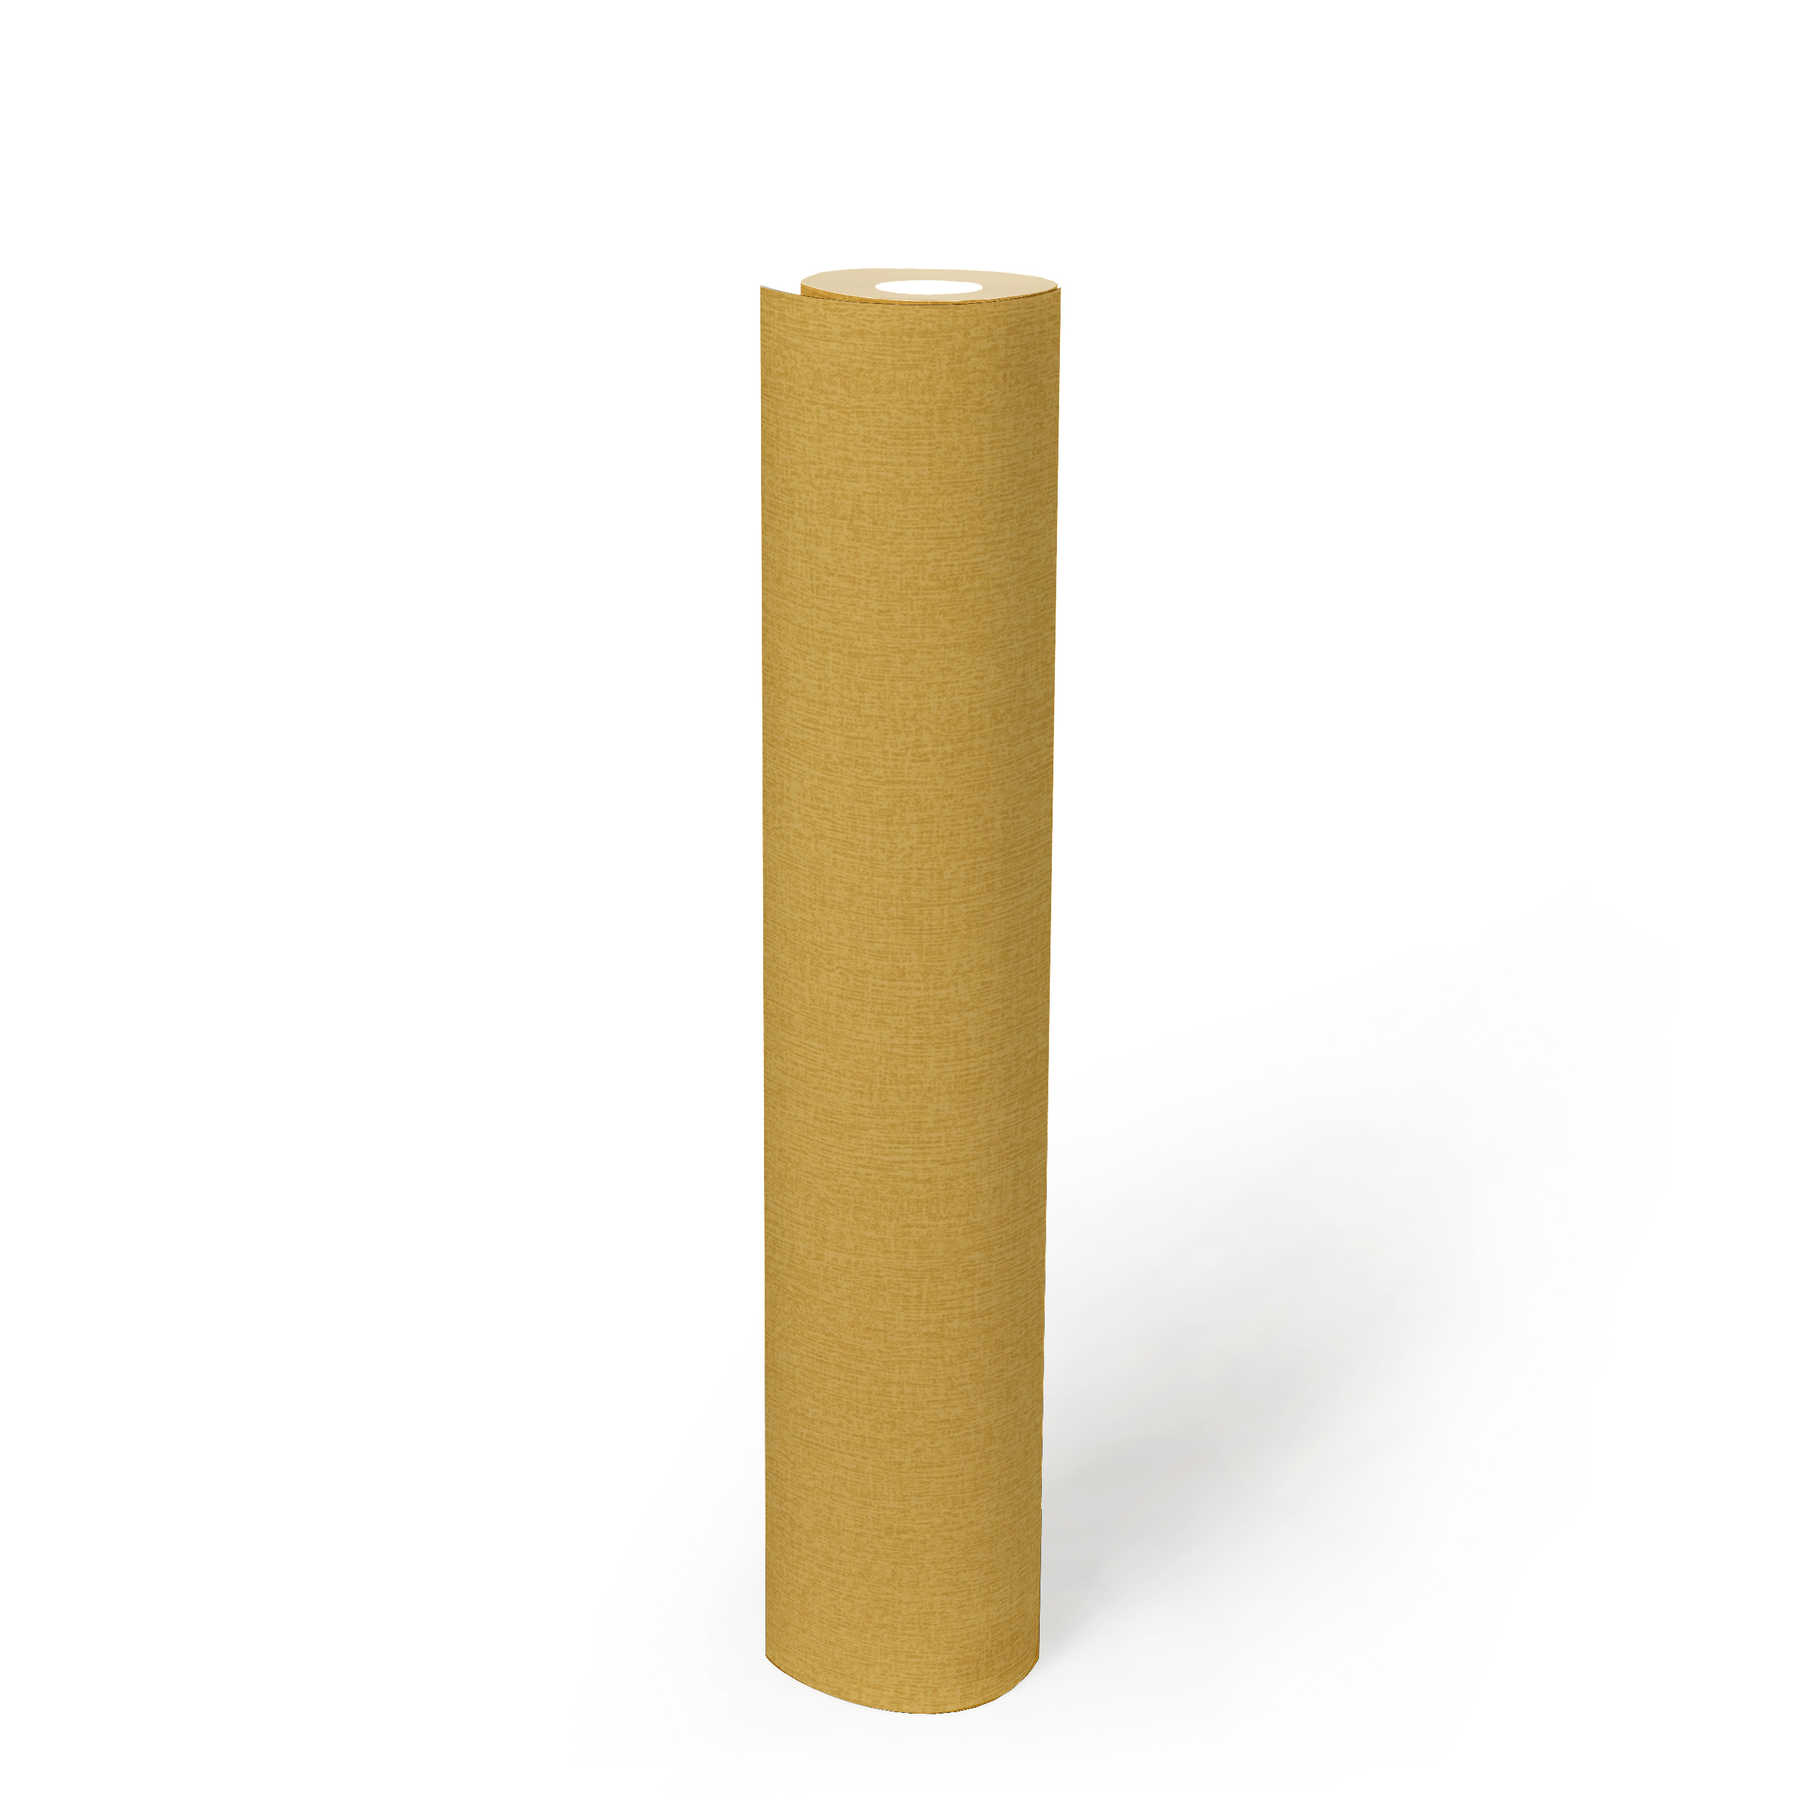             Papier peint uni aspect textile, couleur chinée - jaune
        